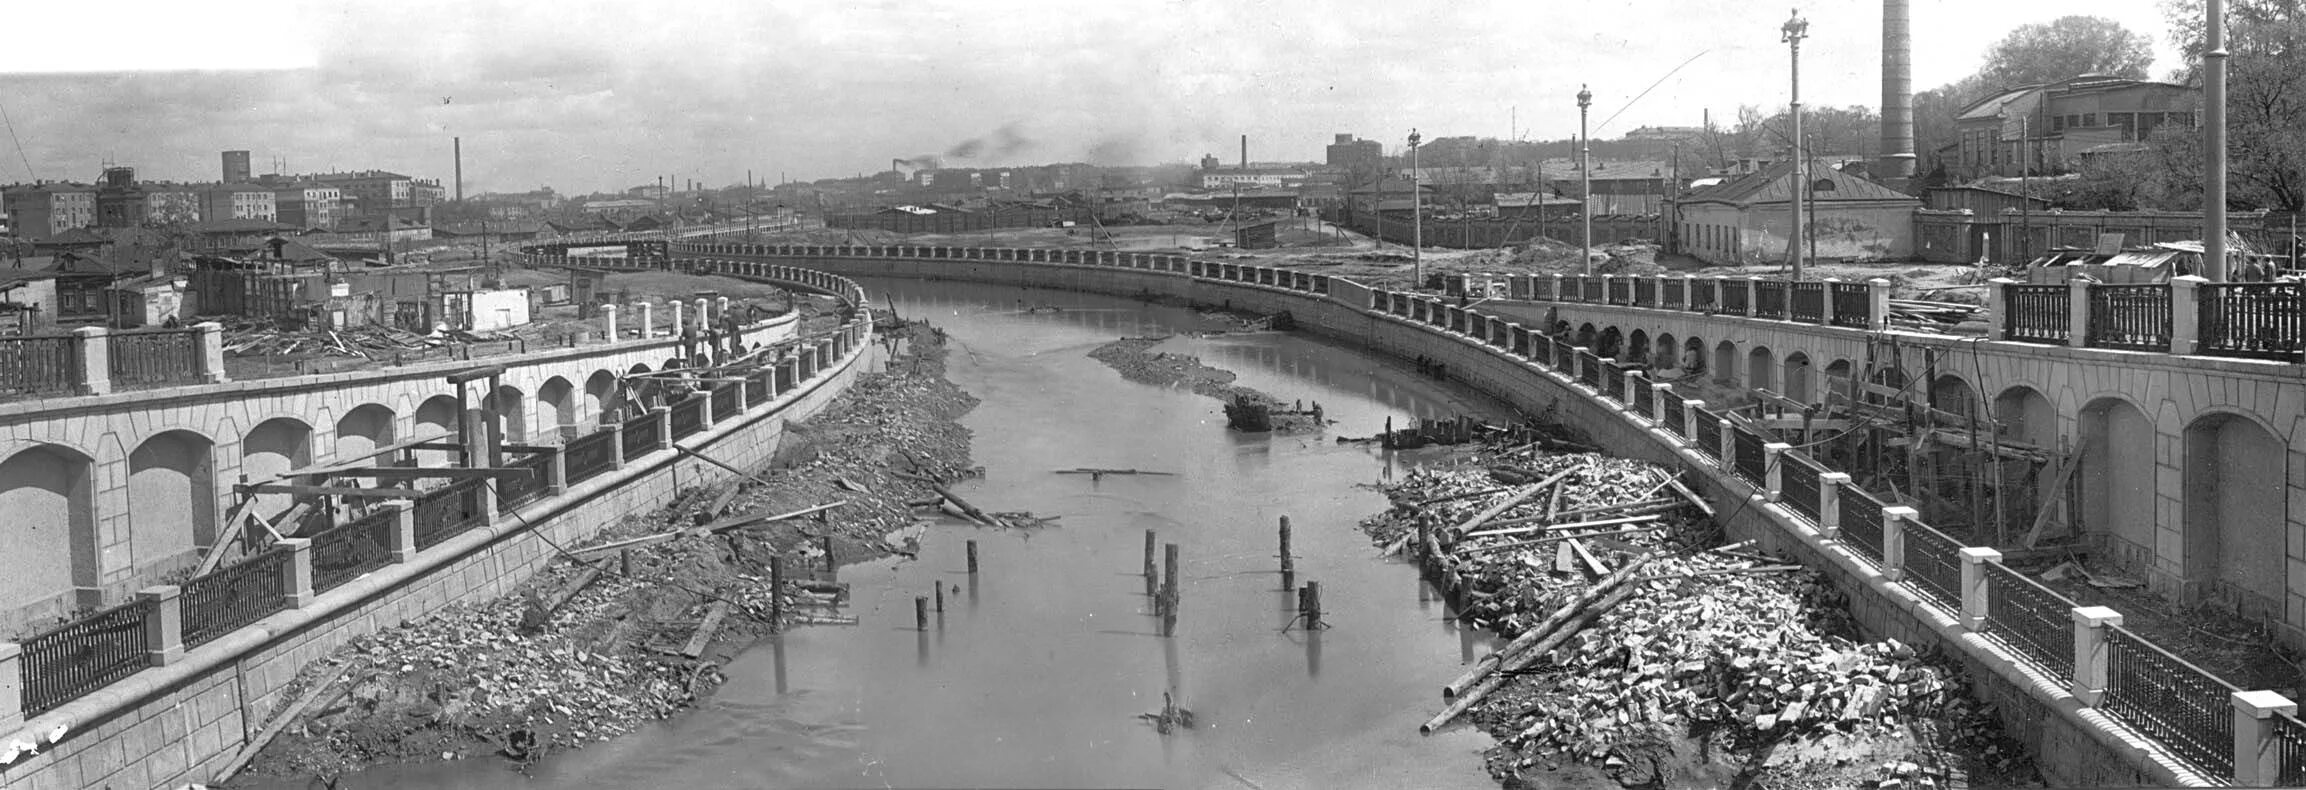 Какие города были в 1930 году. Река Яуза обмелела. Река Яуза Москва 50е. Москва-река обмелела 1930 год. Набережная Москвы реки Дорогомилово 1930.